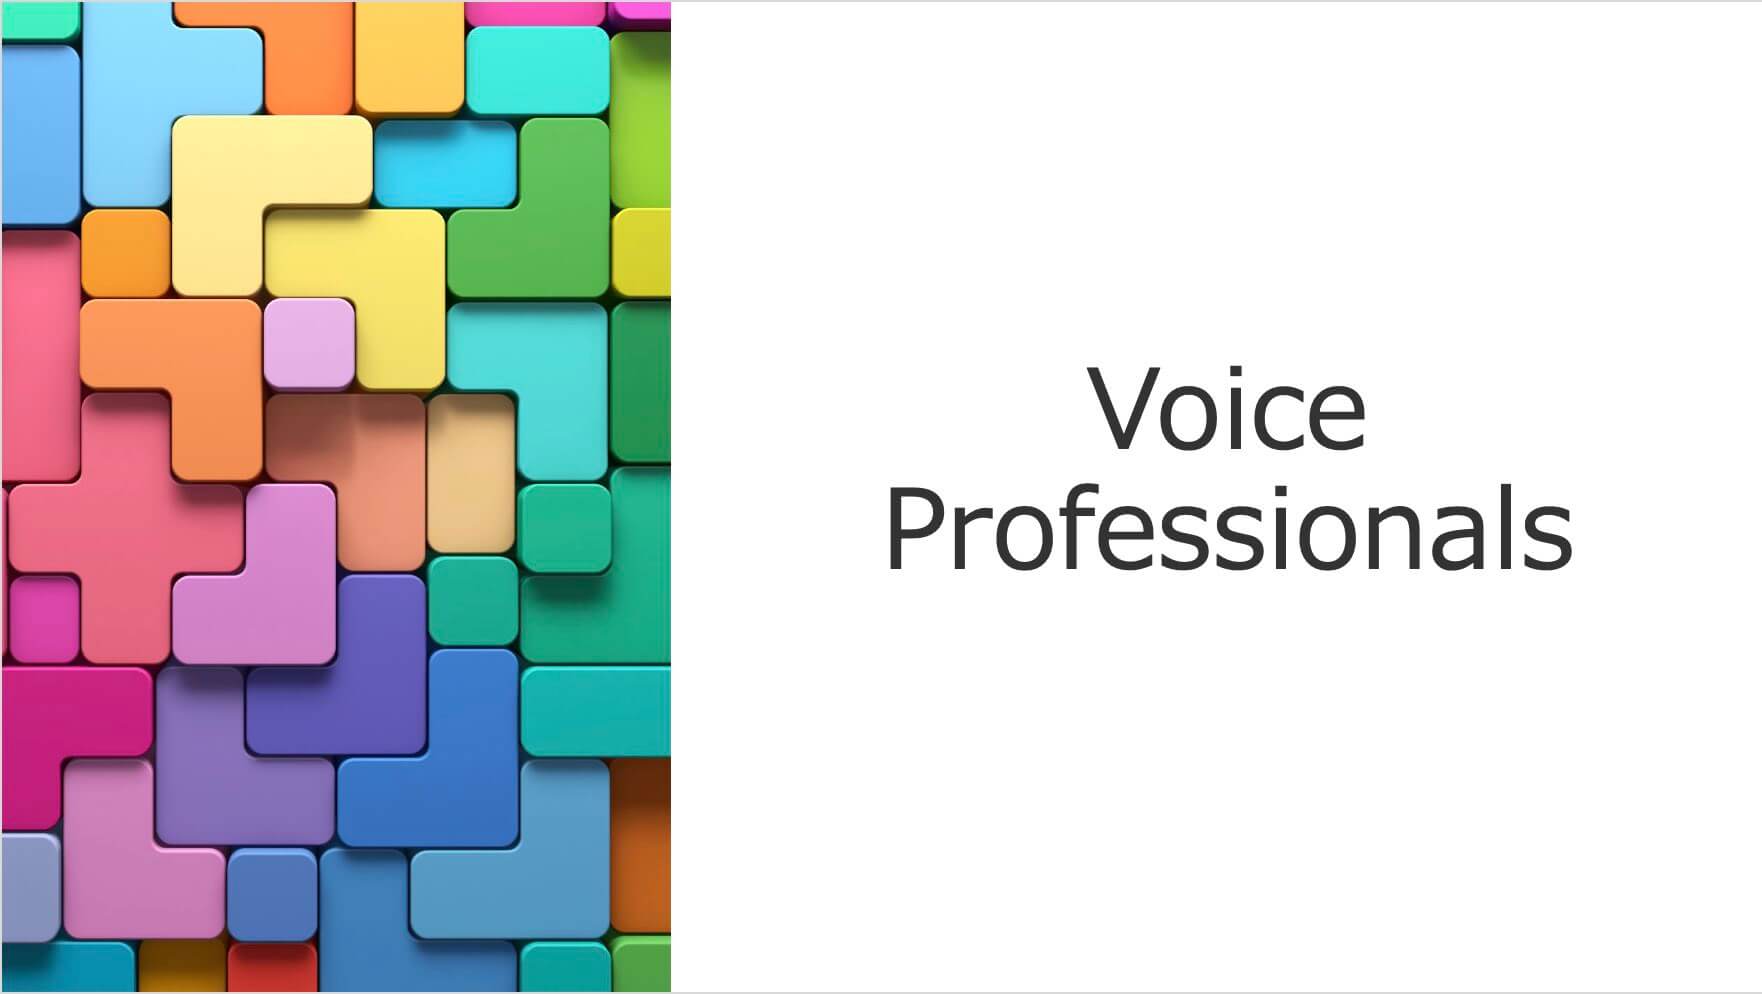 Voice Professionals VP0期 (ボイスプロフェッショナル)ボイストレーナー安倉さやか主催